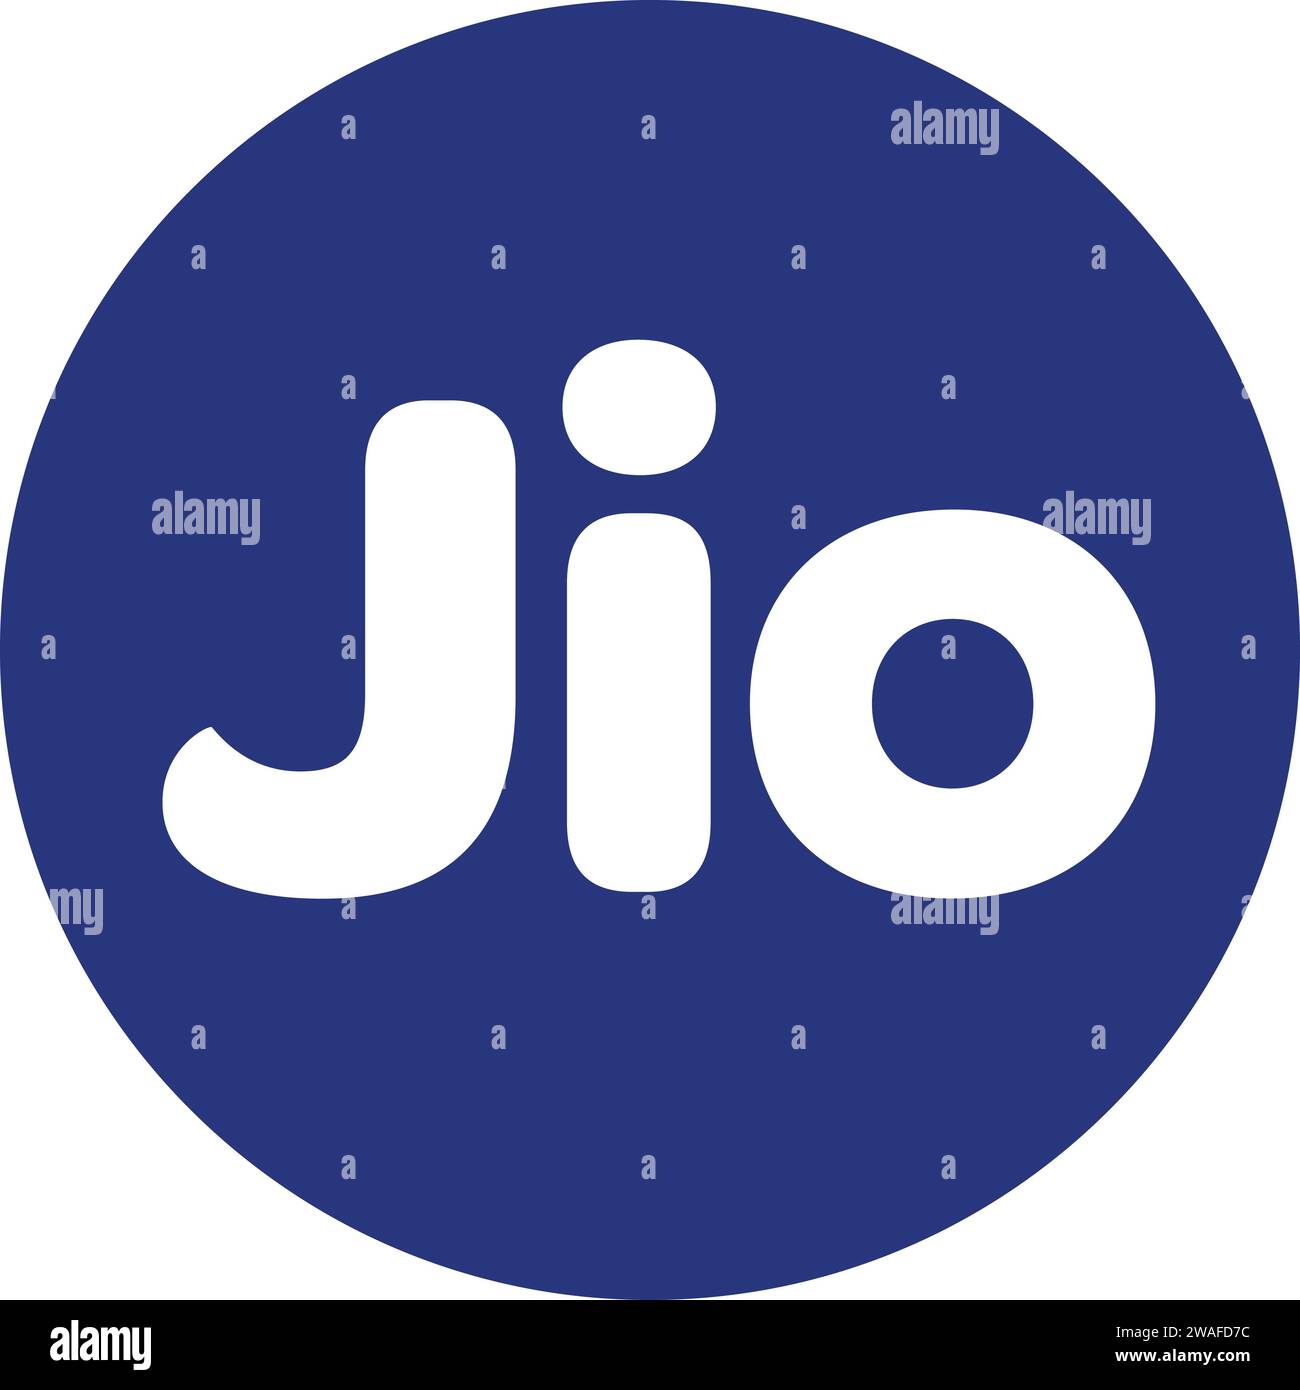 Reliance Jio logo | jio log vector Stock Vector